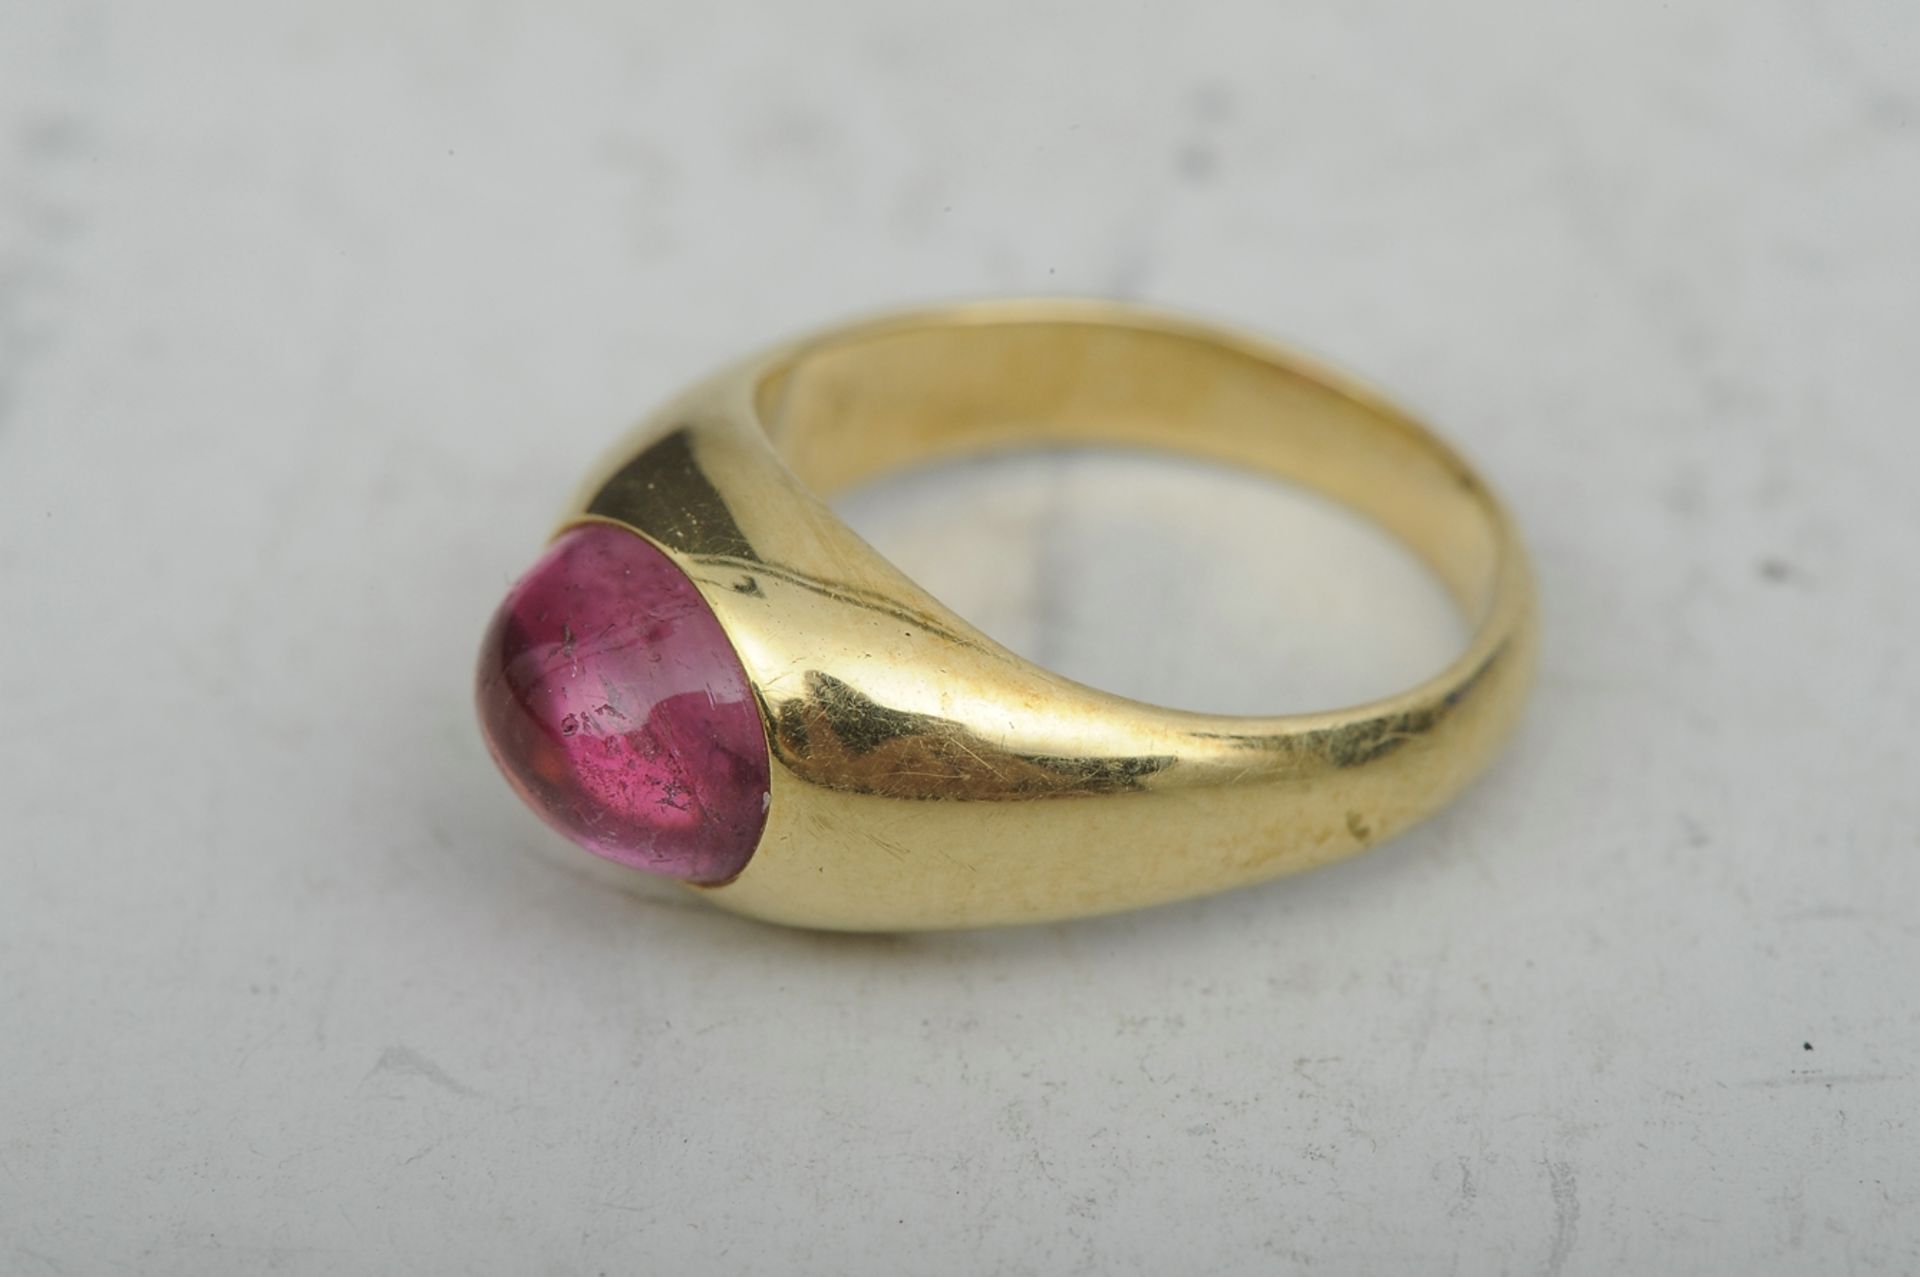 Sehr kleiner Ring aus 750er Gelbgold, mittig mit hell lilafarbenem Turmalin besetzt. Ringgröße ca. - Bild 7 aus 7